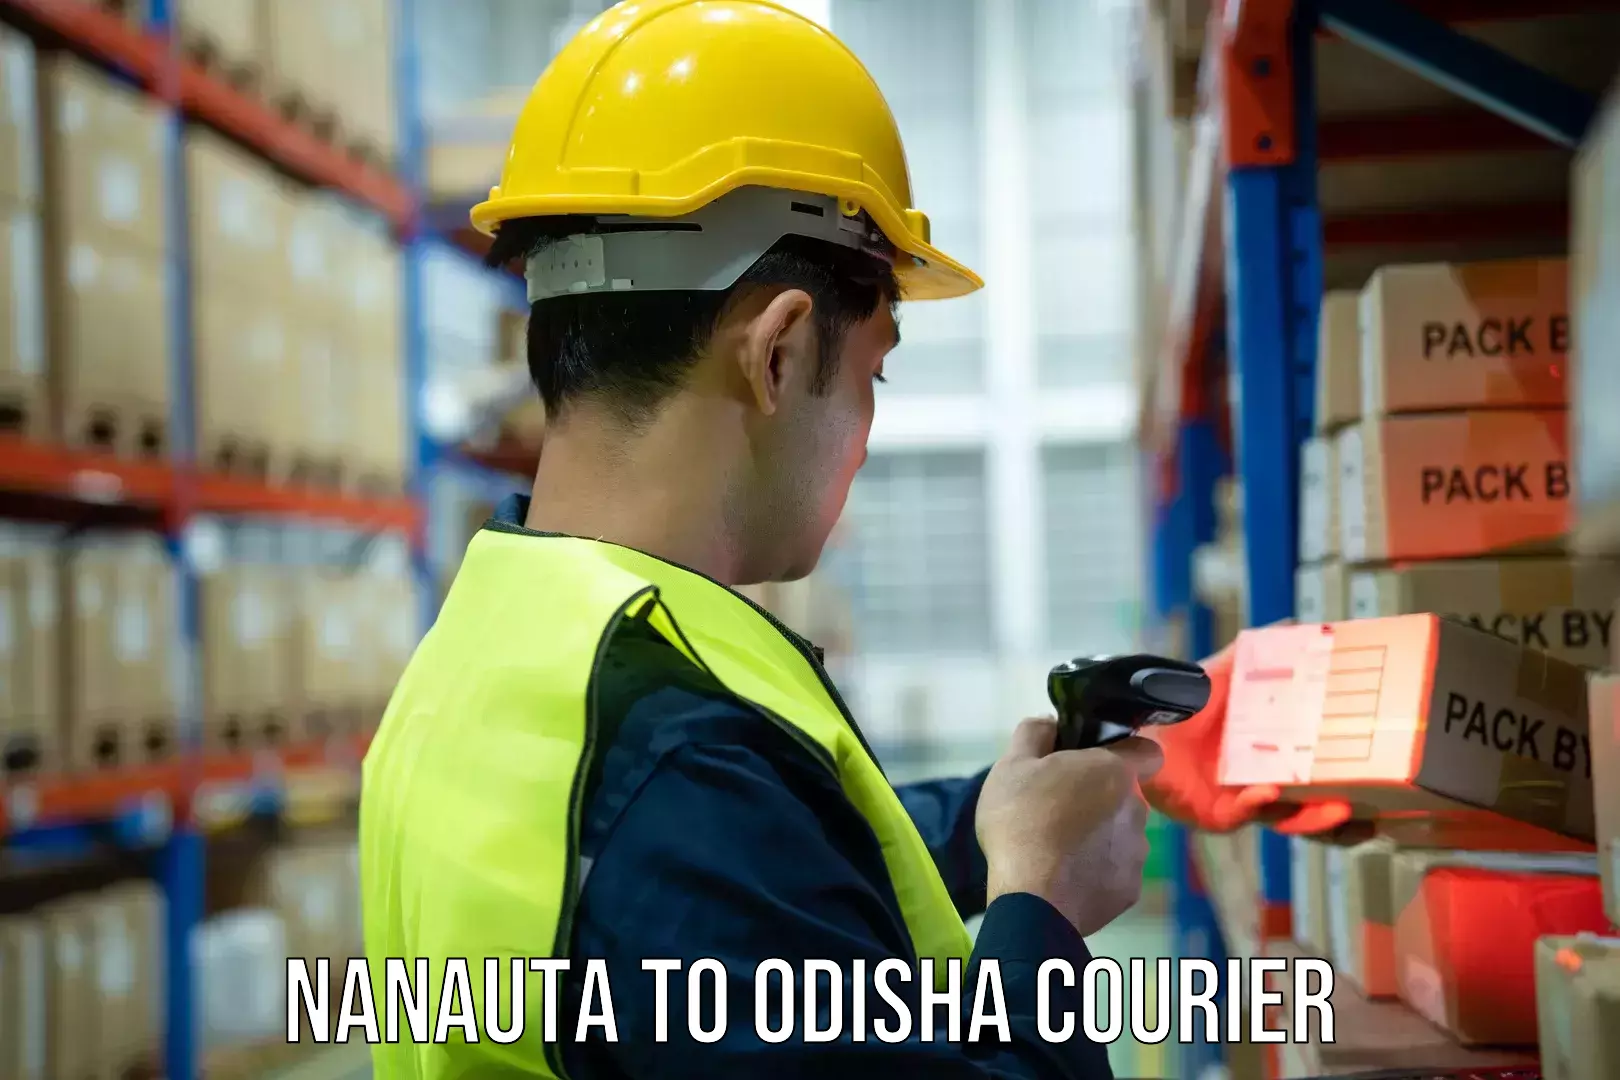 Next-day freight services Nanauta to Odisha